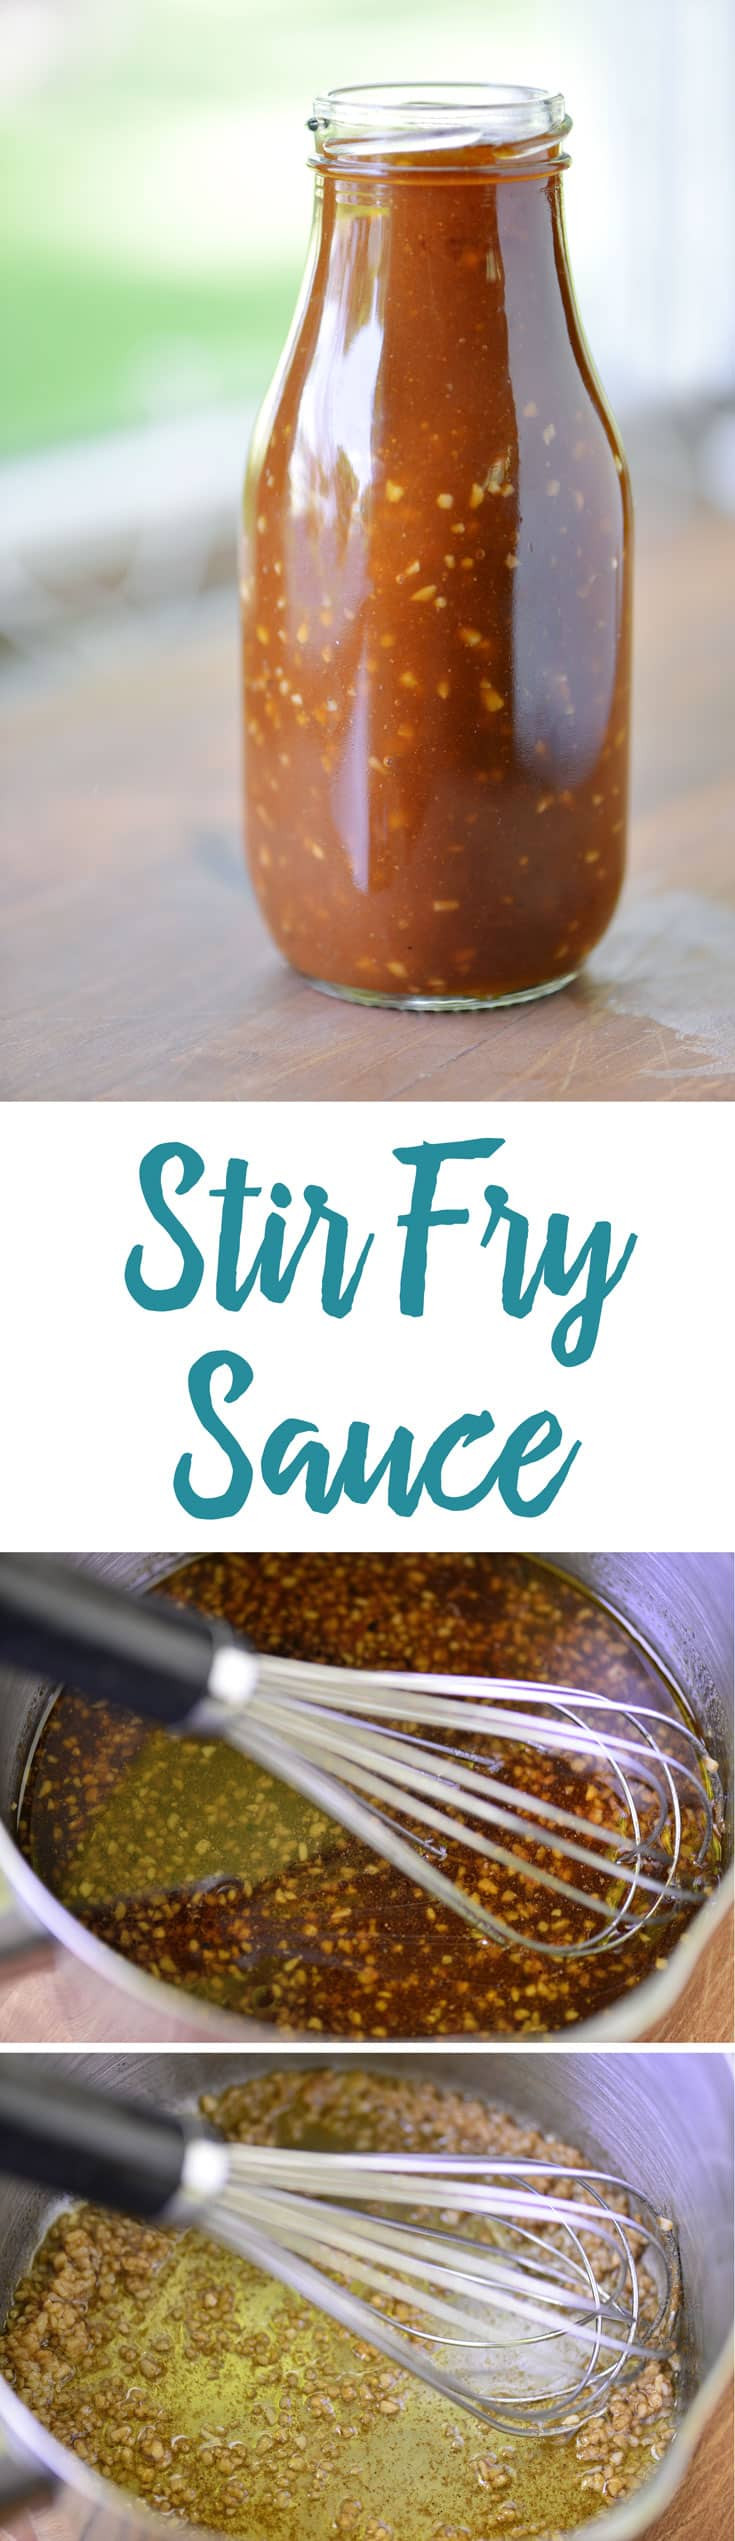 Stir Fry Sauces Recipes
 Stir Fry Sauce Recipe The Gunny Sack